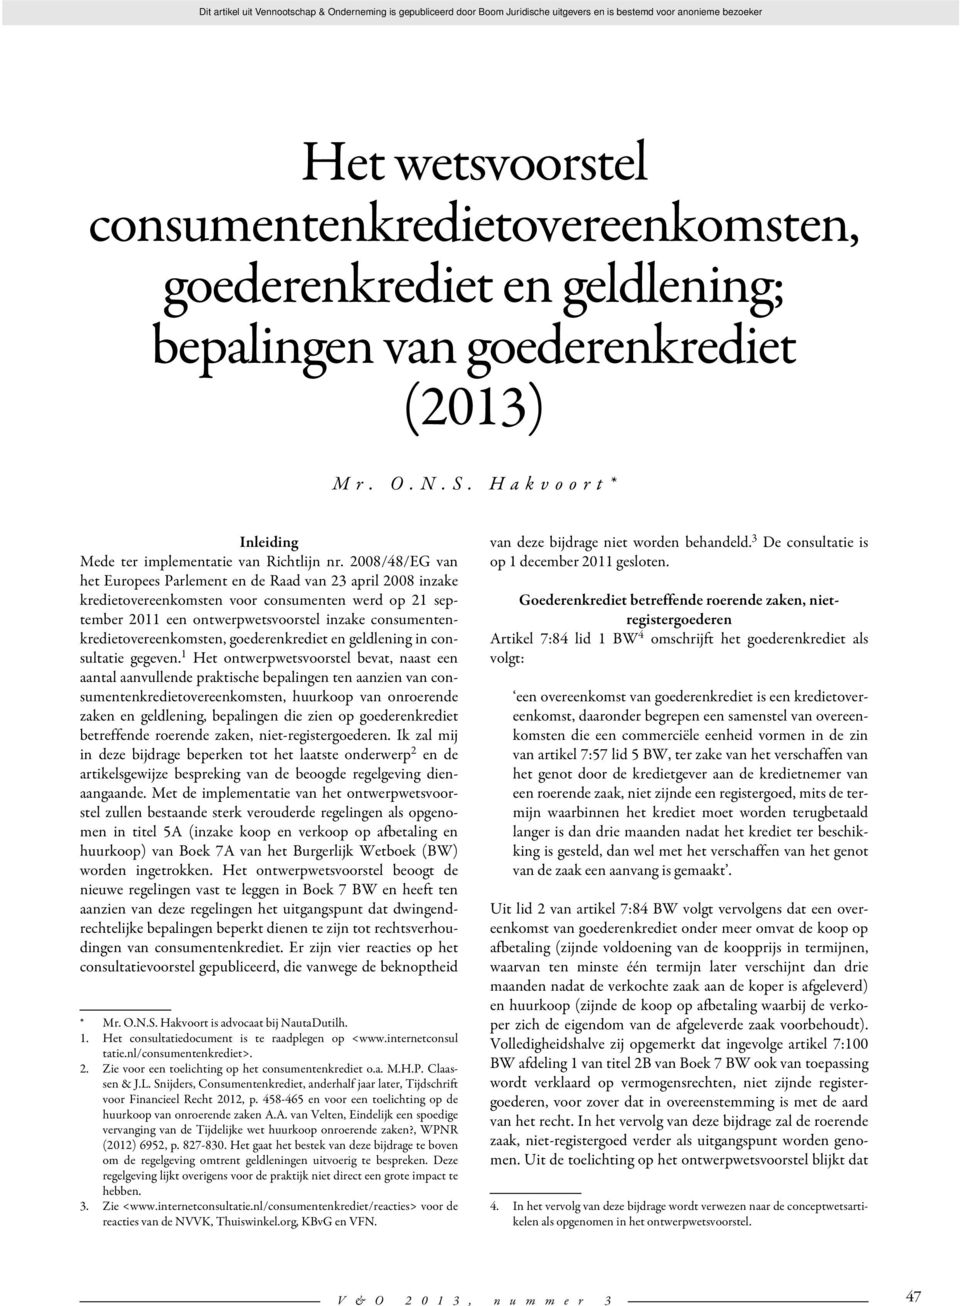 2008/48/EG van het Europees Parlement en de Raad van 23 april 2008 inzake kredietovereenkomsten voor consumenten werd op 21 september 2011 een ontwerpwetsvoorstel inzake